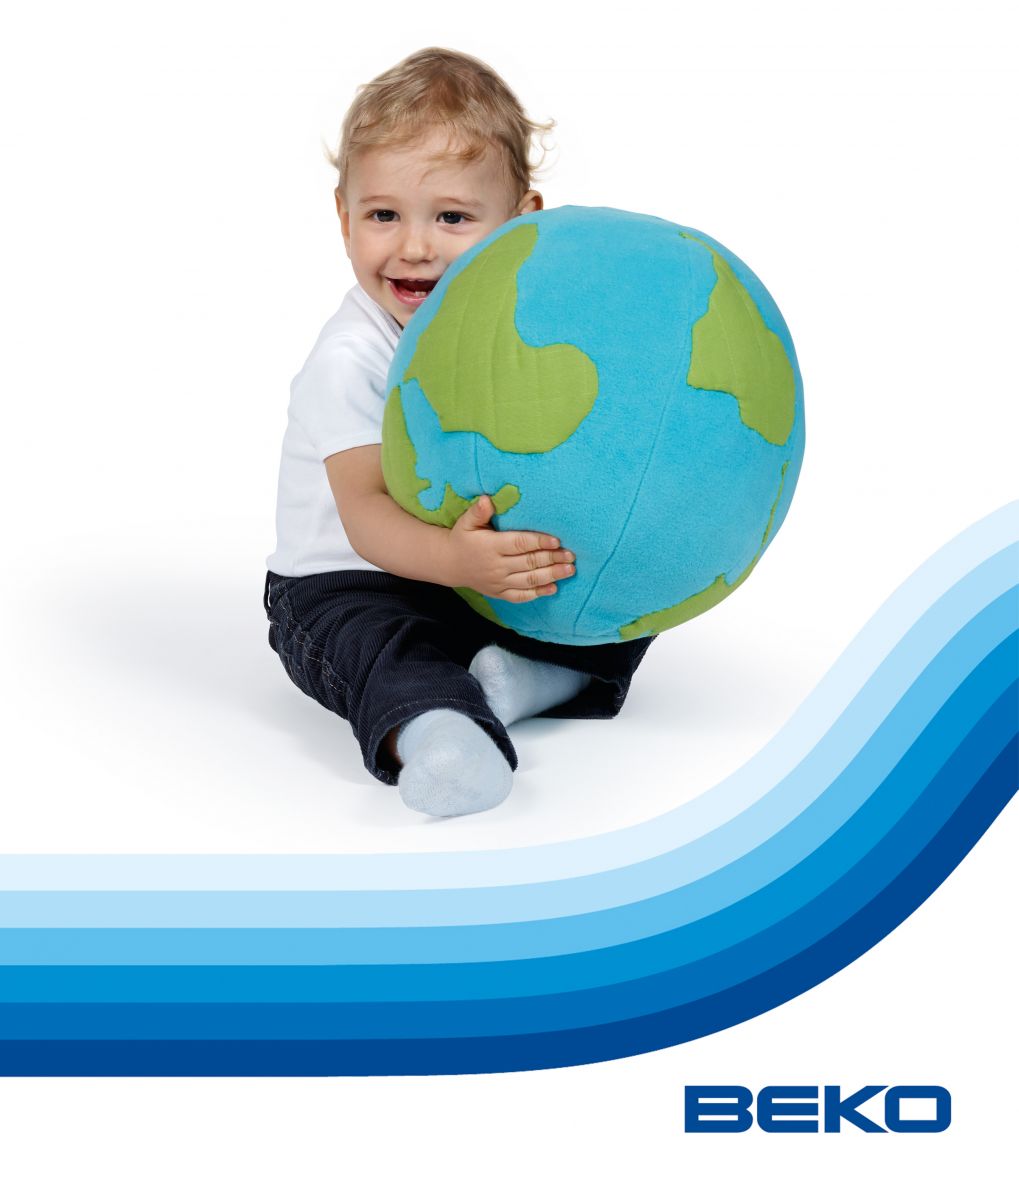 Cu Beko sărbătorești Ziua Internațională a Mediului în fiecare zi